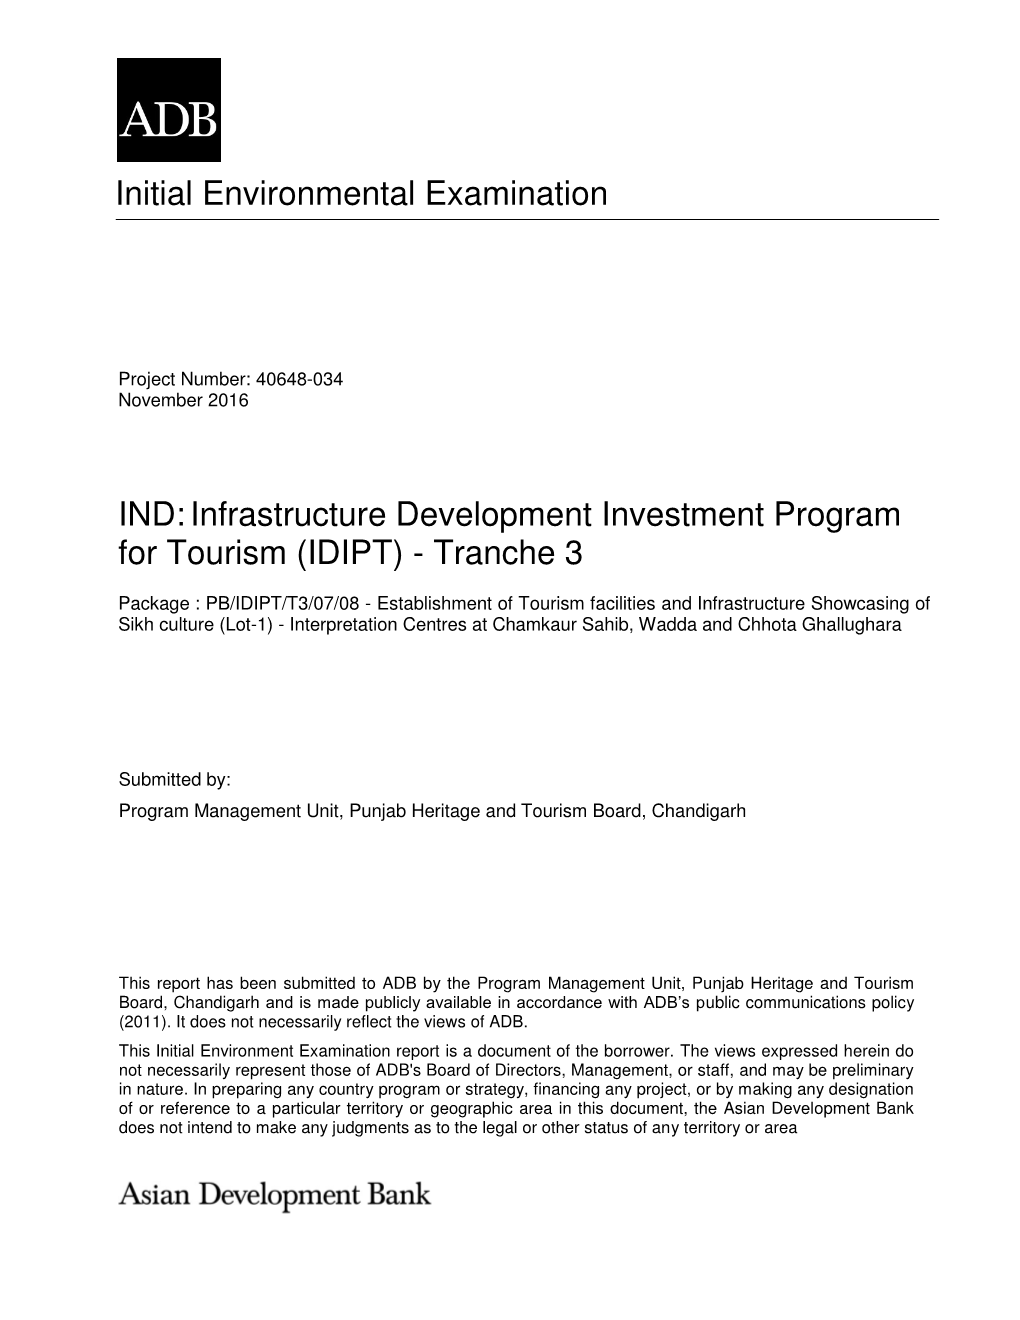 Environmental Assessment Document